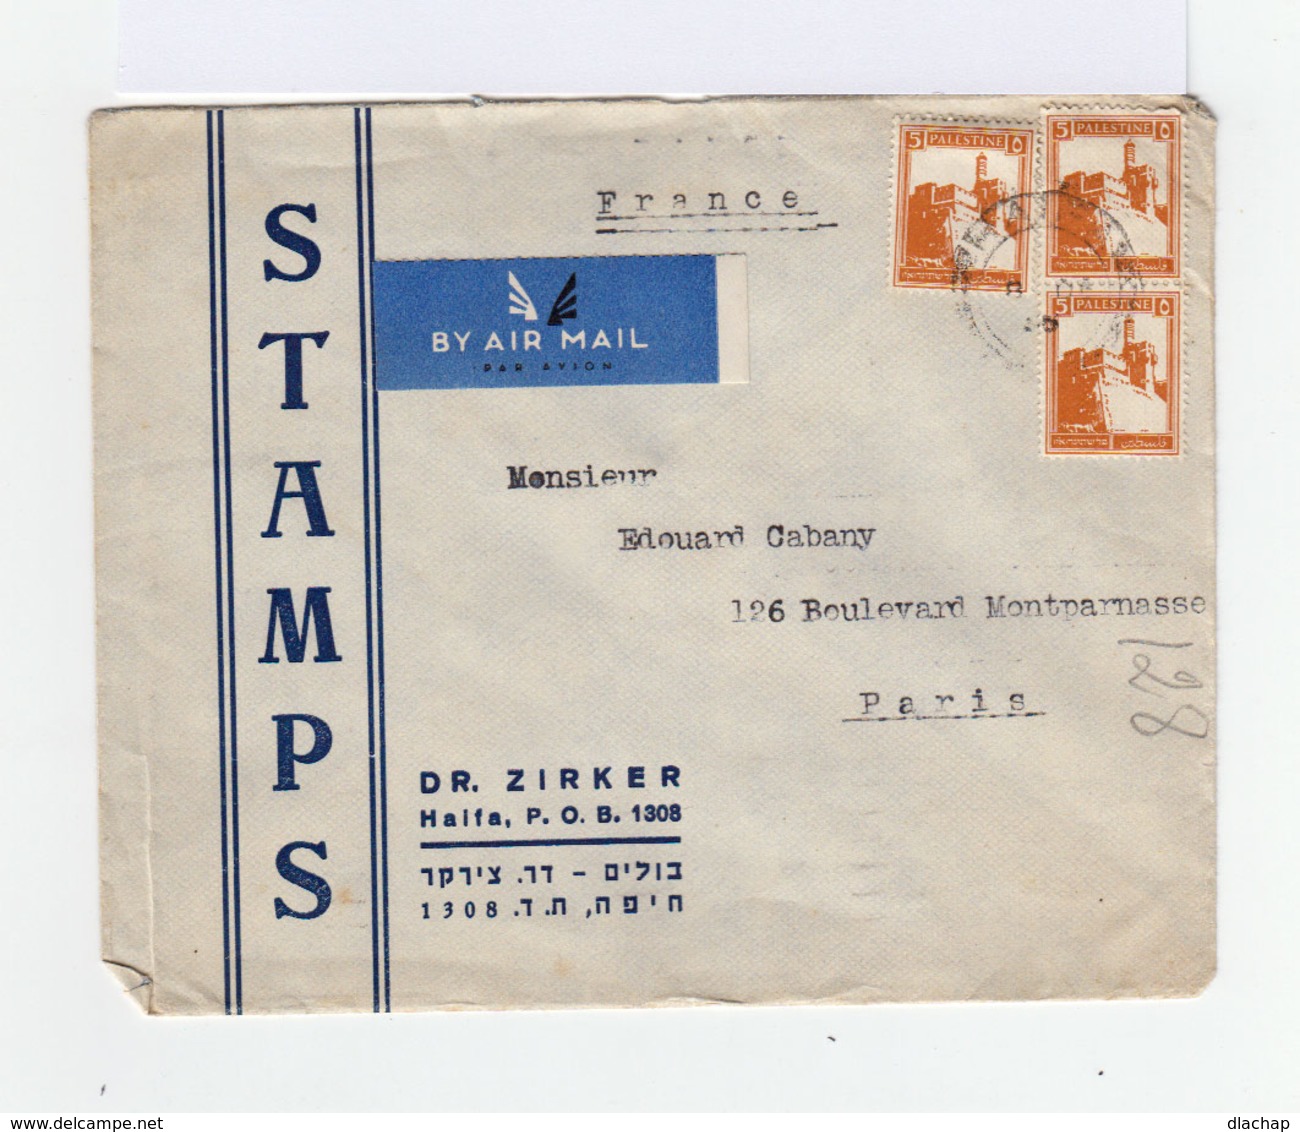 Sur Enveloppe By Air Mail De Palestine 1936 Paire De 5 C. Jaune Orange Citadelle De Jérusalem Et Un Timbre Idem. (787) - Palestine